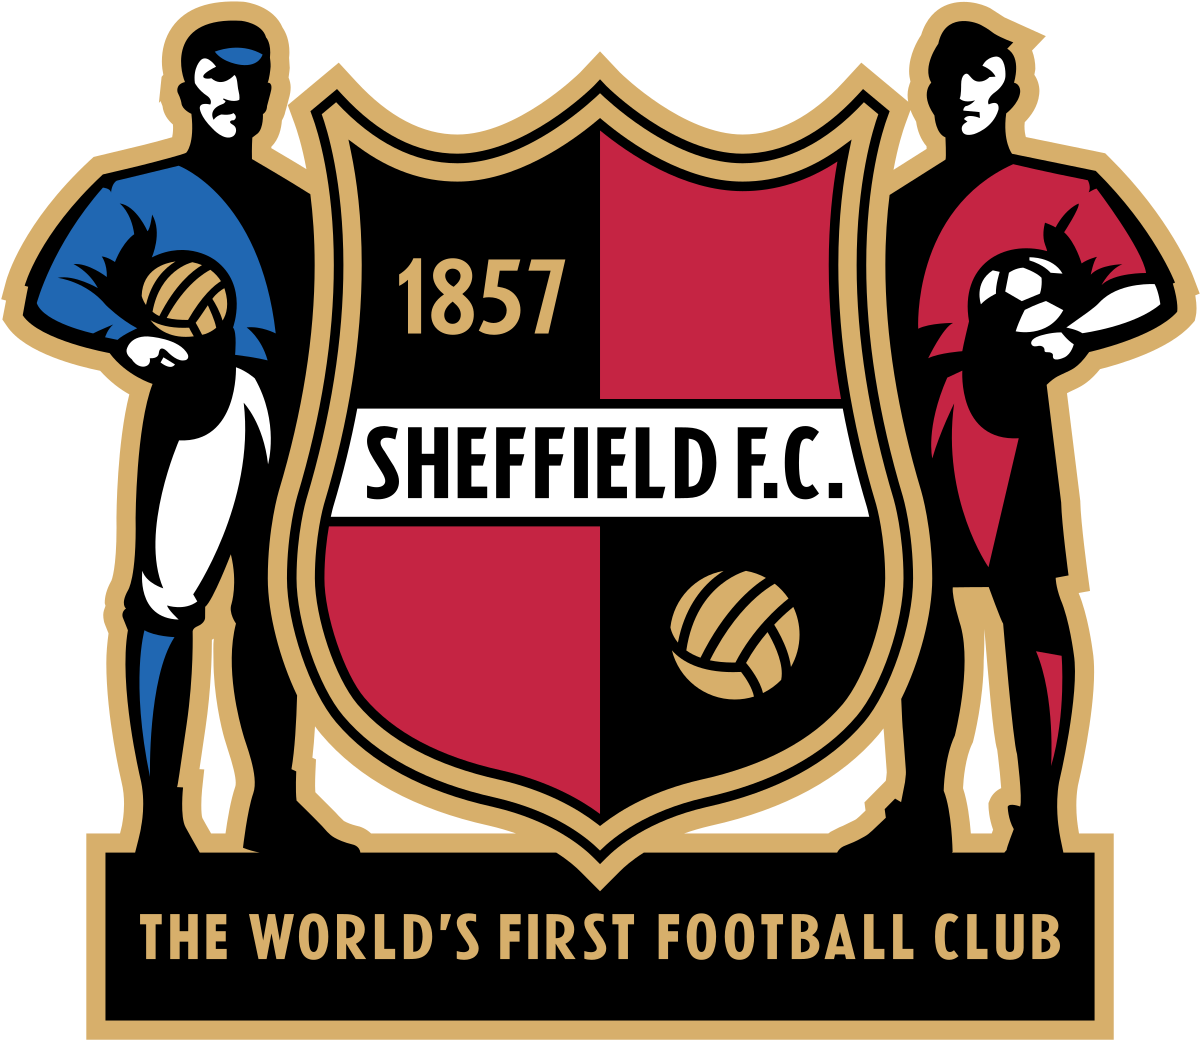 Club Sheffield FC